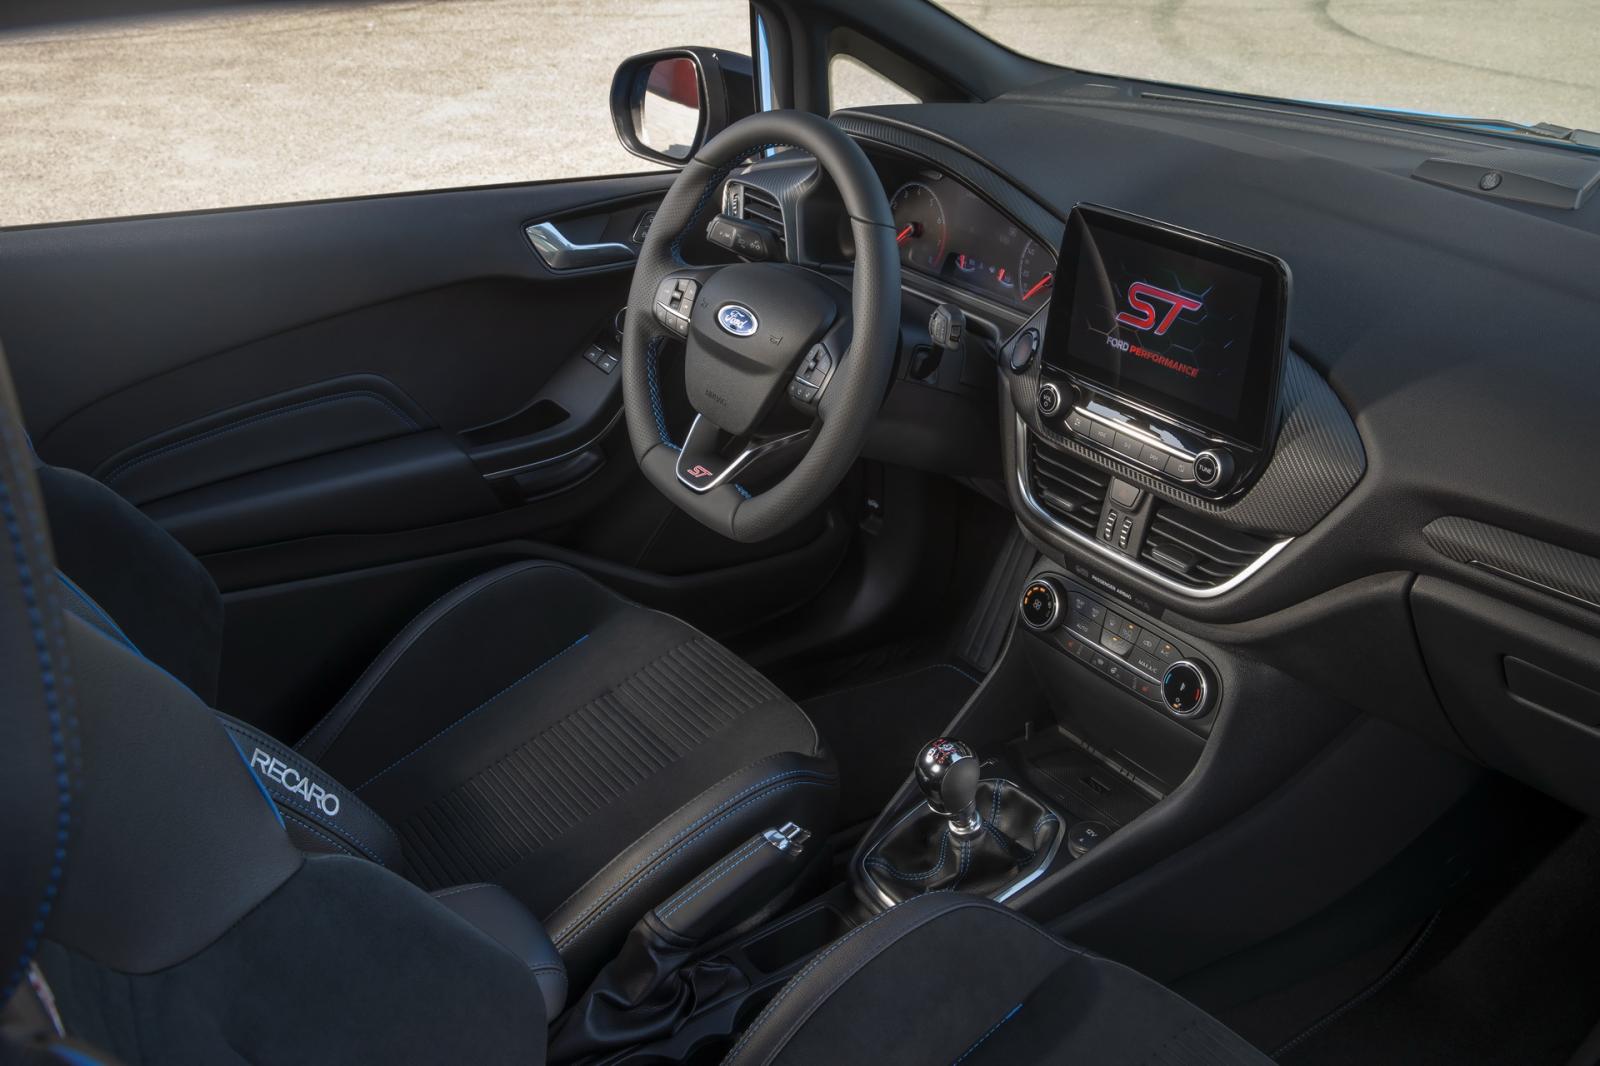 Ford Fiesta ST Edition tích hợp công nghệ cao cấp.